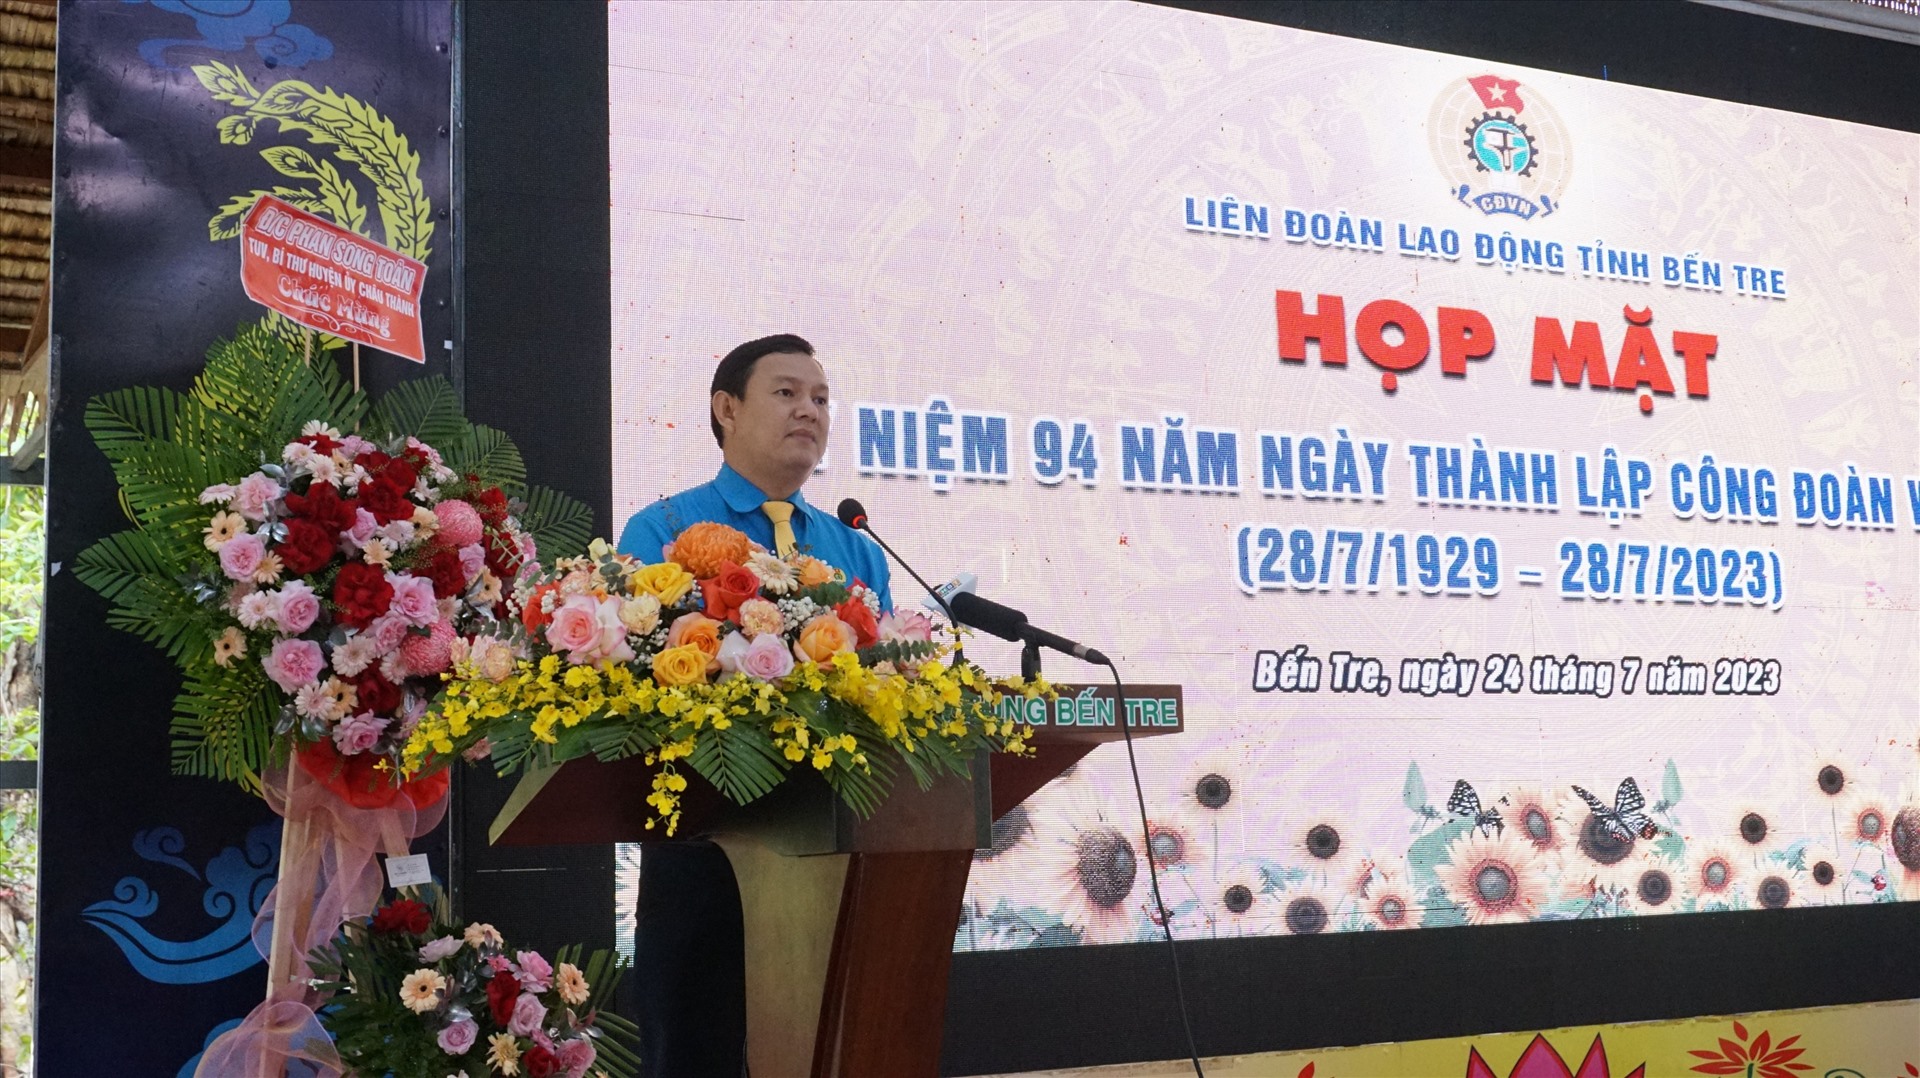 Chủ tịch LĐLĐ tỉnh Bến Tre Nguyễn Phúc Linh phát biểu tại buổi lễ họp mặt. Ảnh: LĐLĐ tỉnh Bến Tre